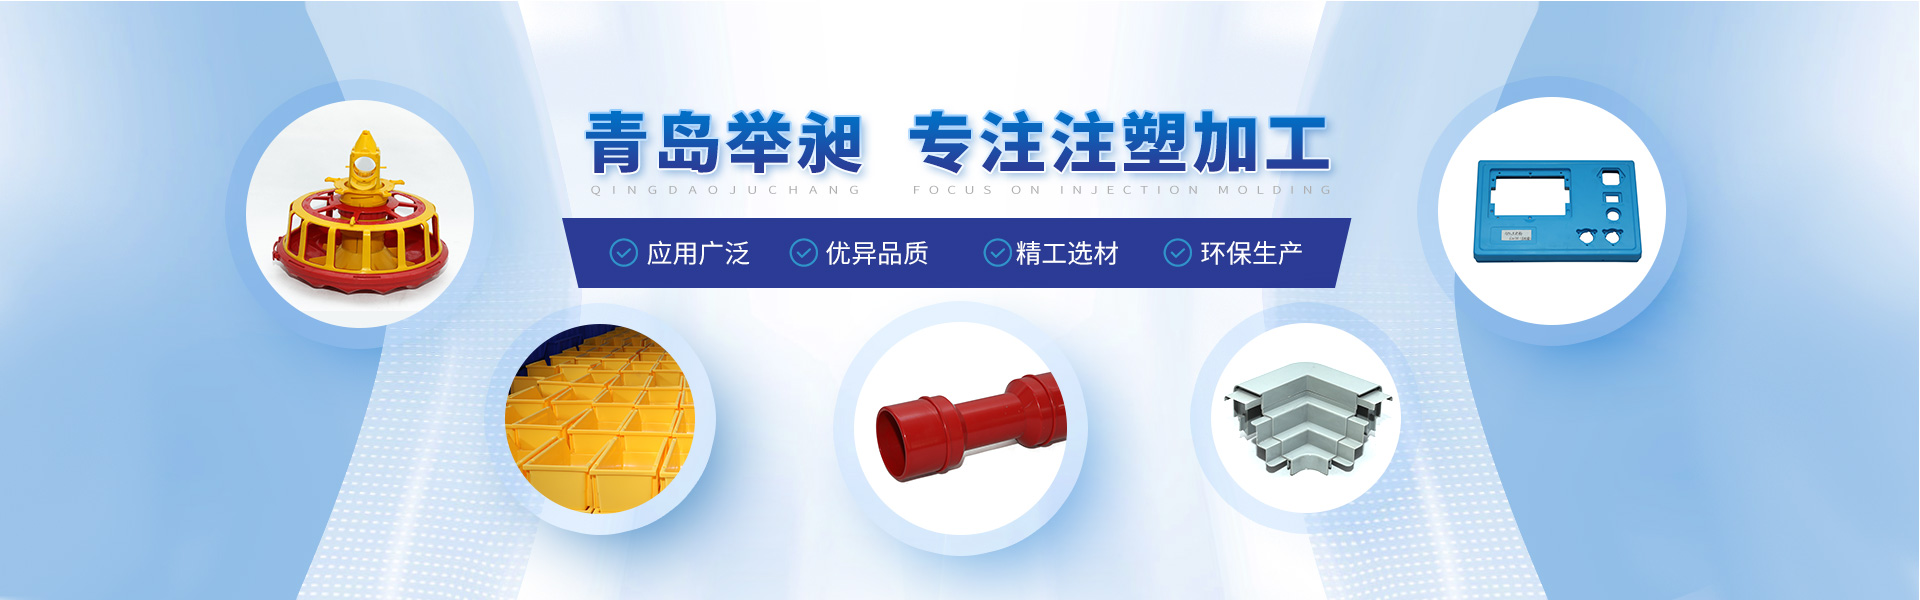 青岛中国福彩双色球专业提供注塑加工,注塑模具等产品服务.